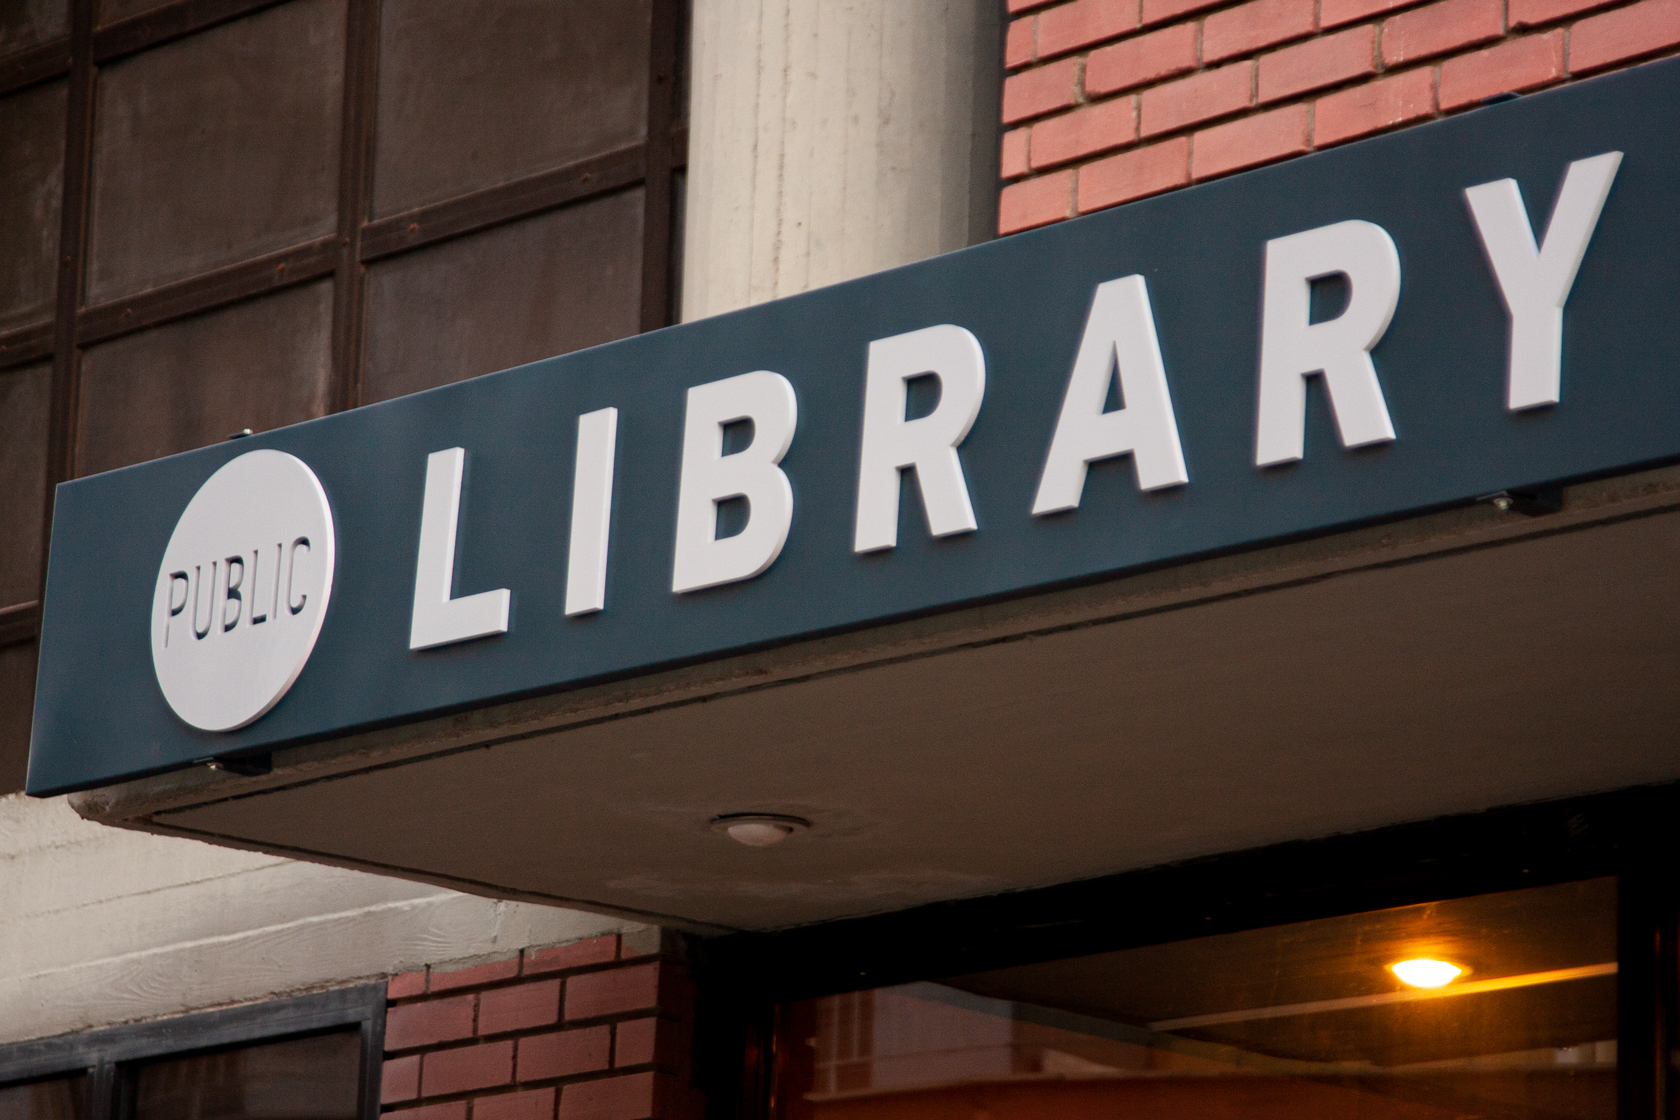 Δημόσια Βιβλιοθήκη Δράμας